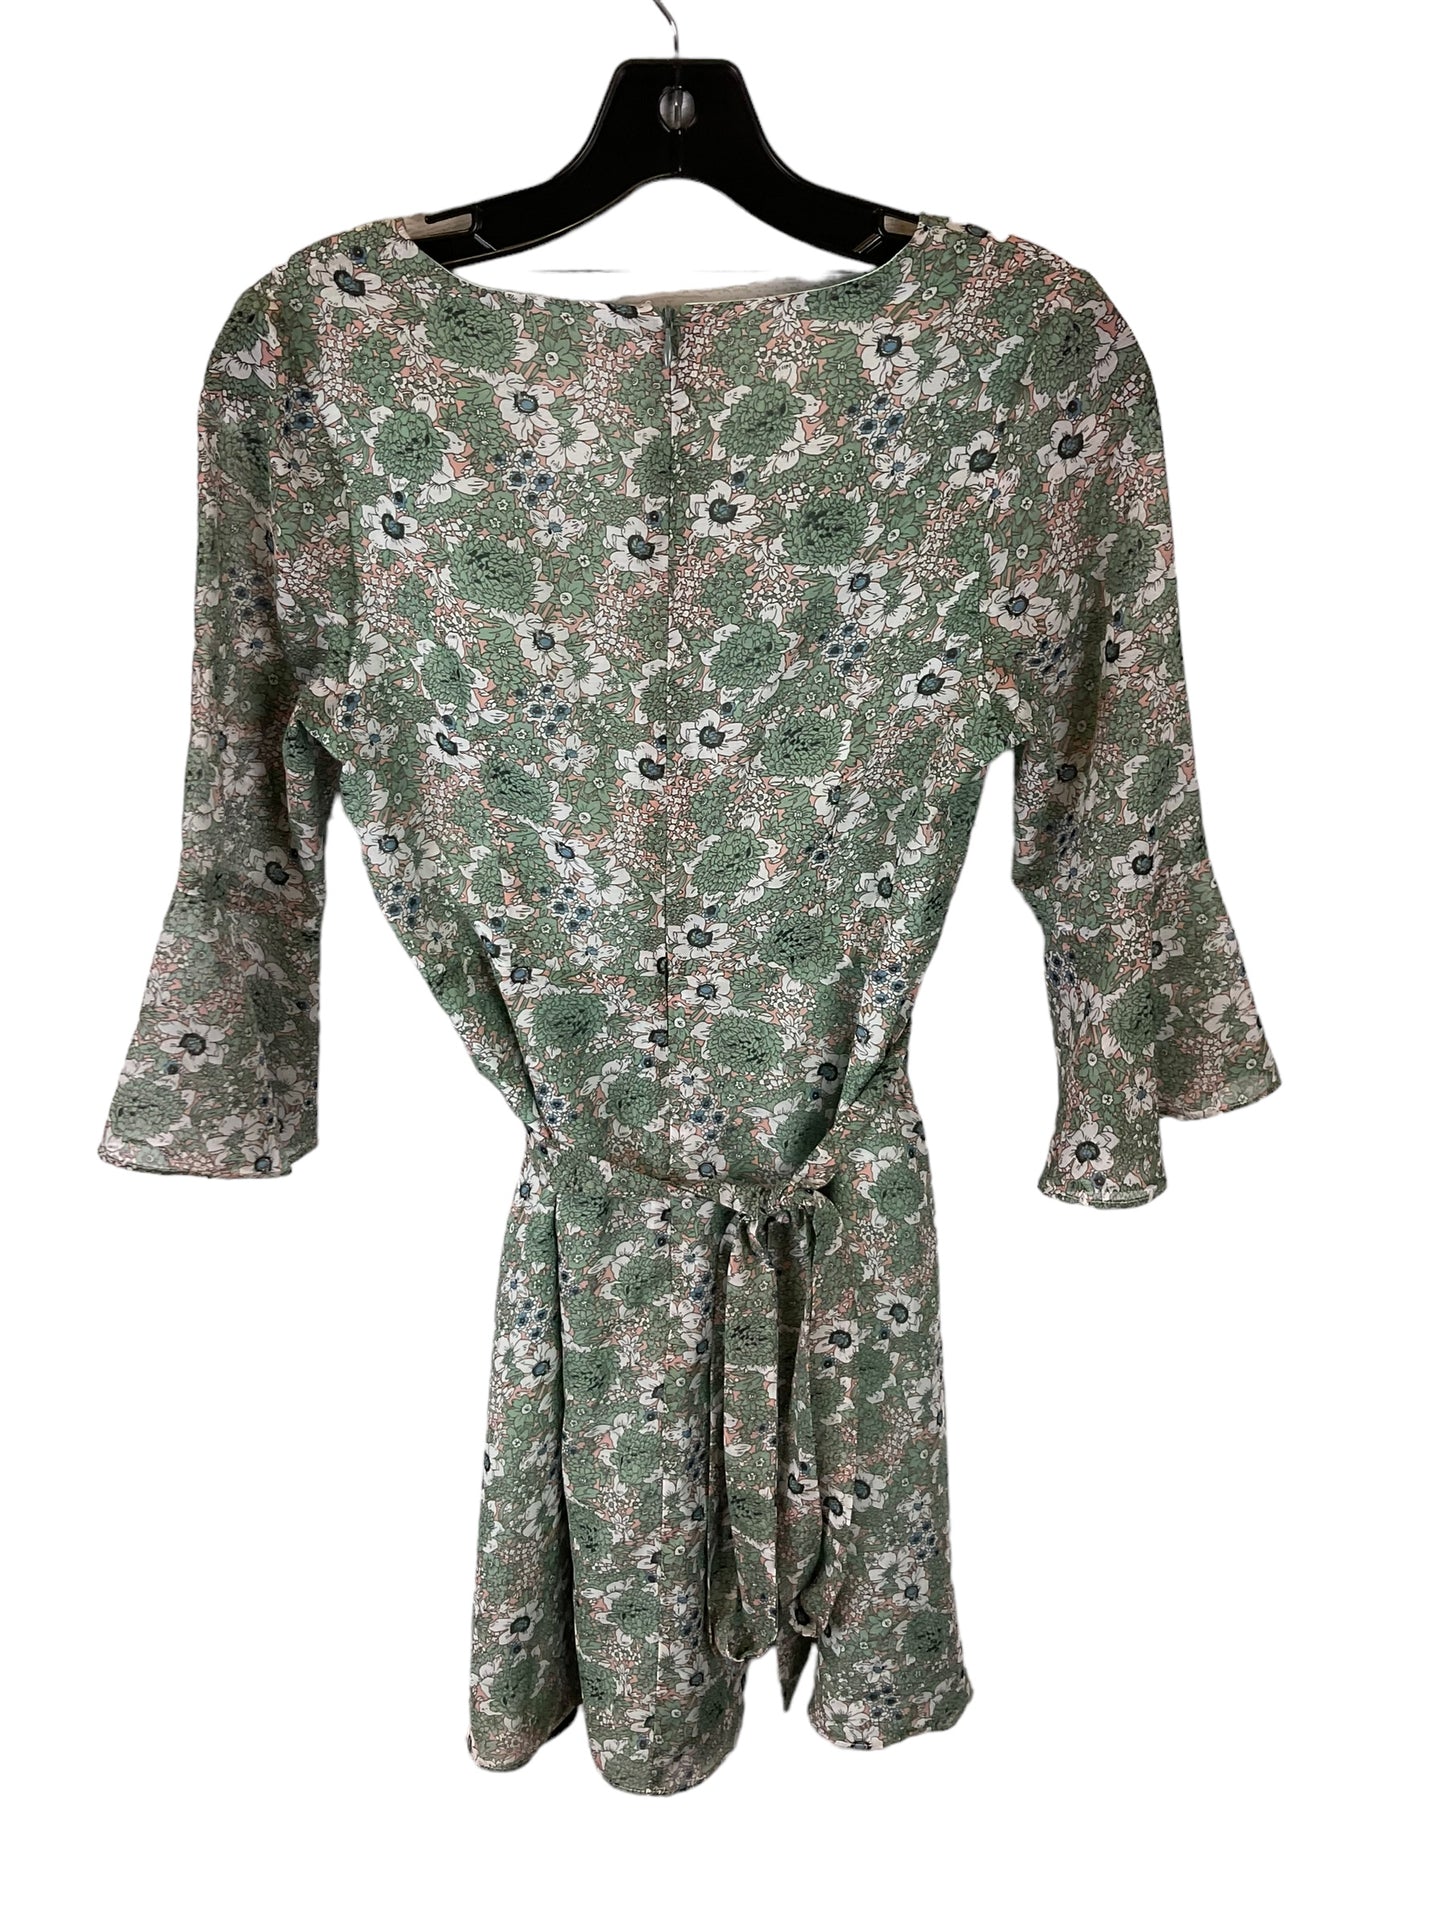 Dress Casual Short By Molly Bracken  Size: Xs